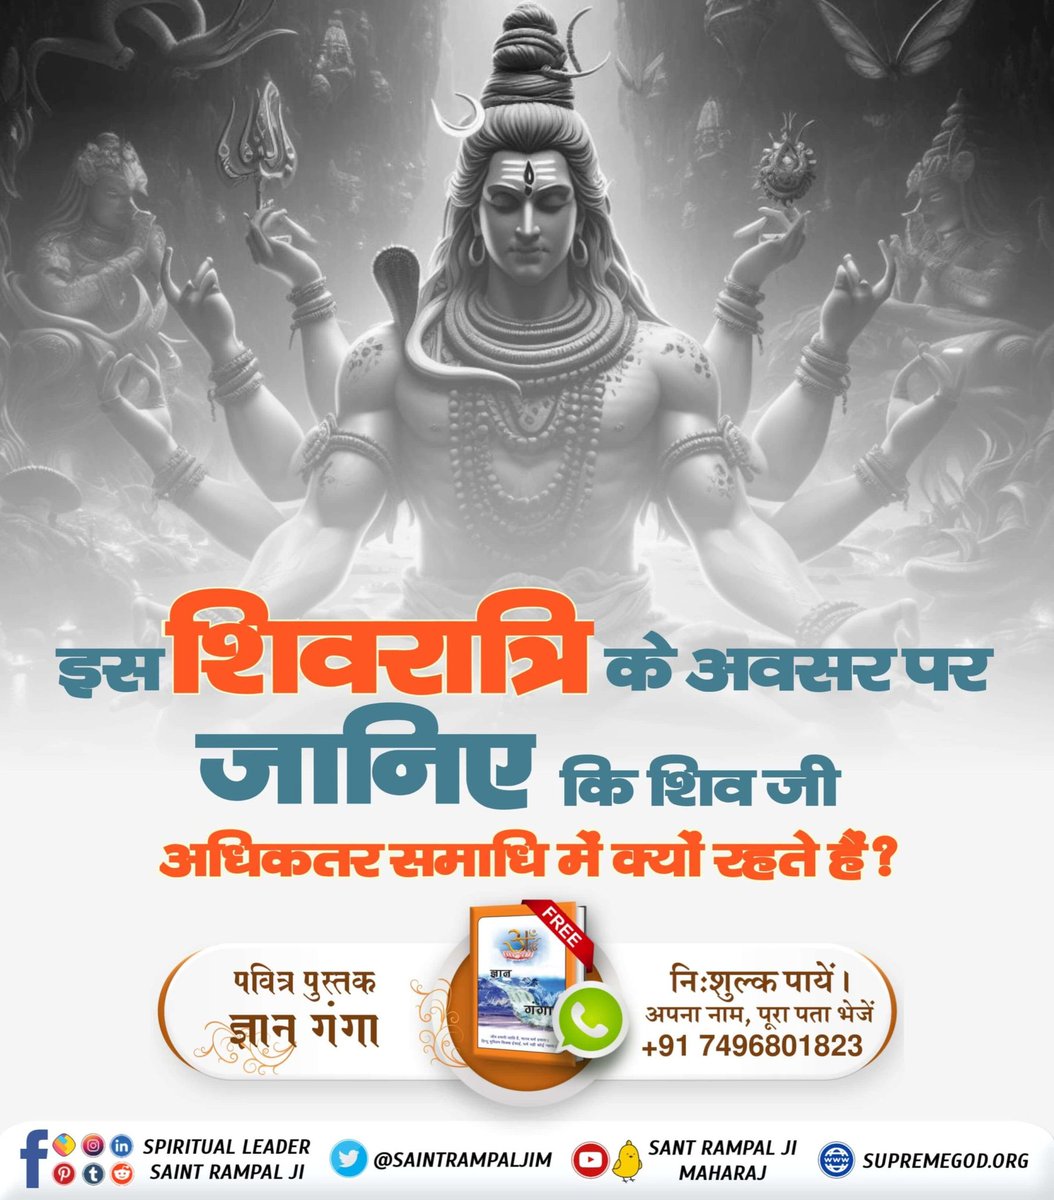 #MysteryOfGodShiva इस शिवरात्रि के अवसर पर जानिए कि शिव जी अधिकतर समाधि में क्यों रहते हैं? समाधि दशा में वह किस प्रभु का ध्यान करते है? जानने के लिए डाउनलोड करें Sant Rampal Ji Maharaj App और पढ़ें पुस्तक 'हिन्दू साहेबान नहीं समझे गीता, वेद, पुराण।